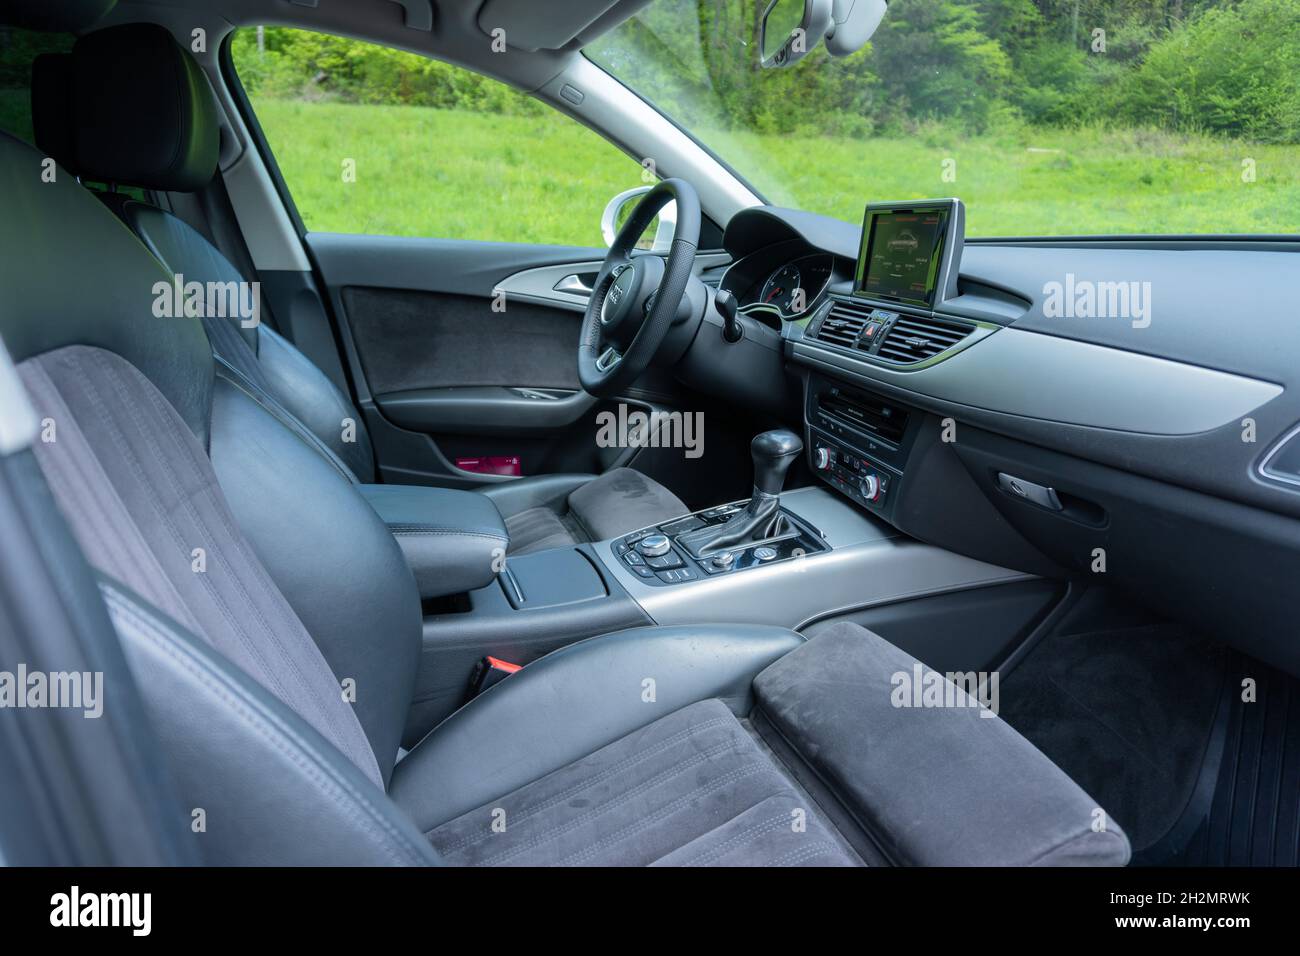 CLUJ, ROUMANIE - 15 mai 2021 : un intérieur de sièges sport Alcantara et des ornements chromés sur le tableau de bord - Audi A6 année 2014 Banque D'Images